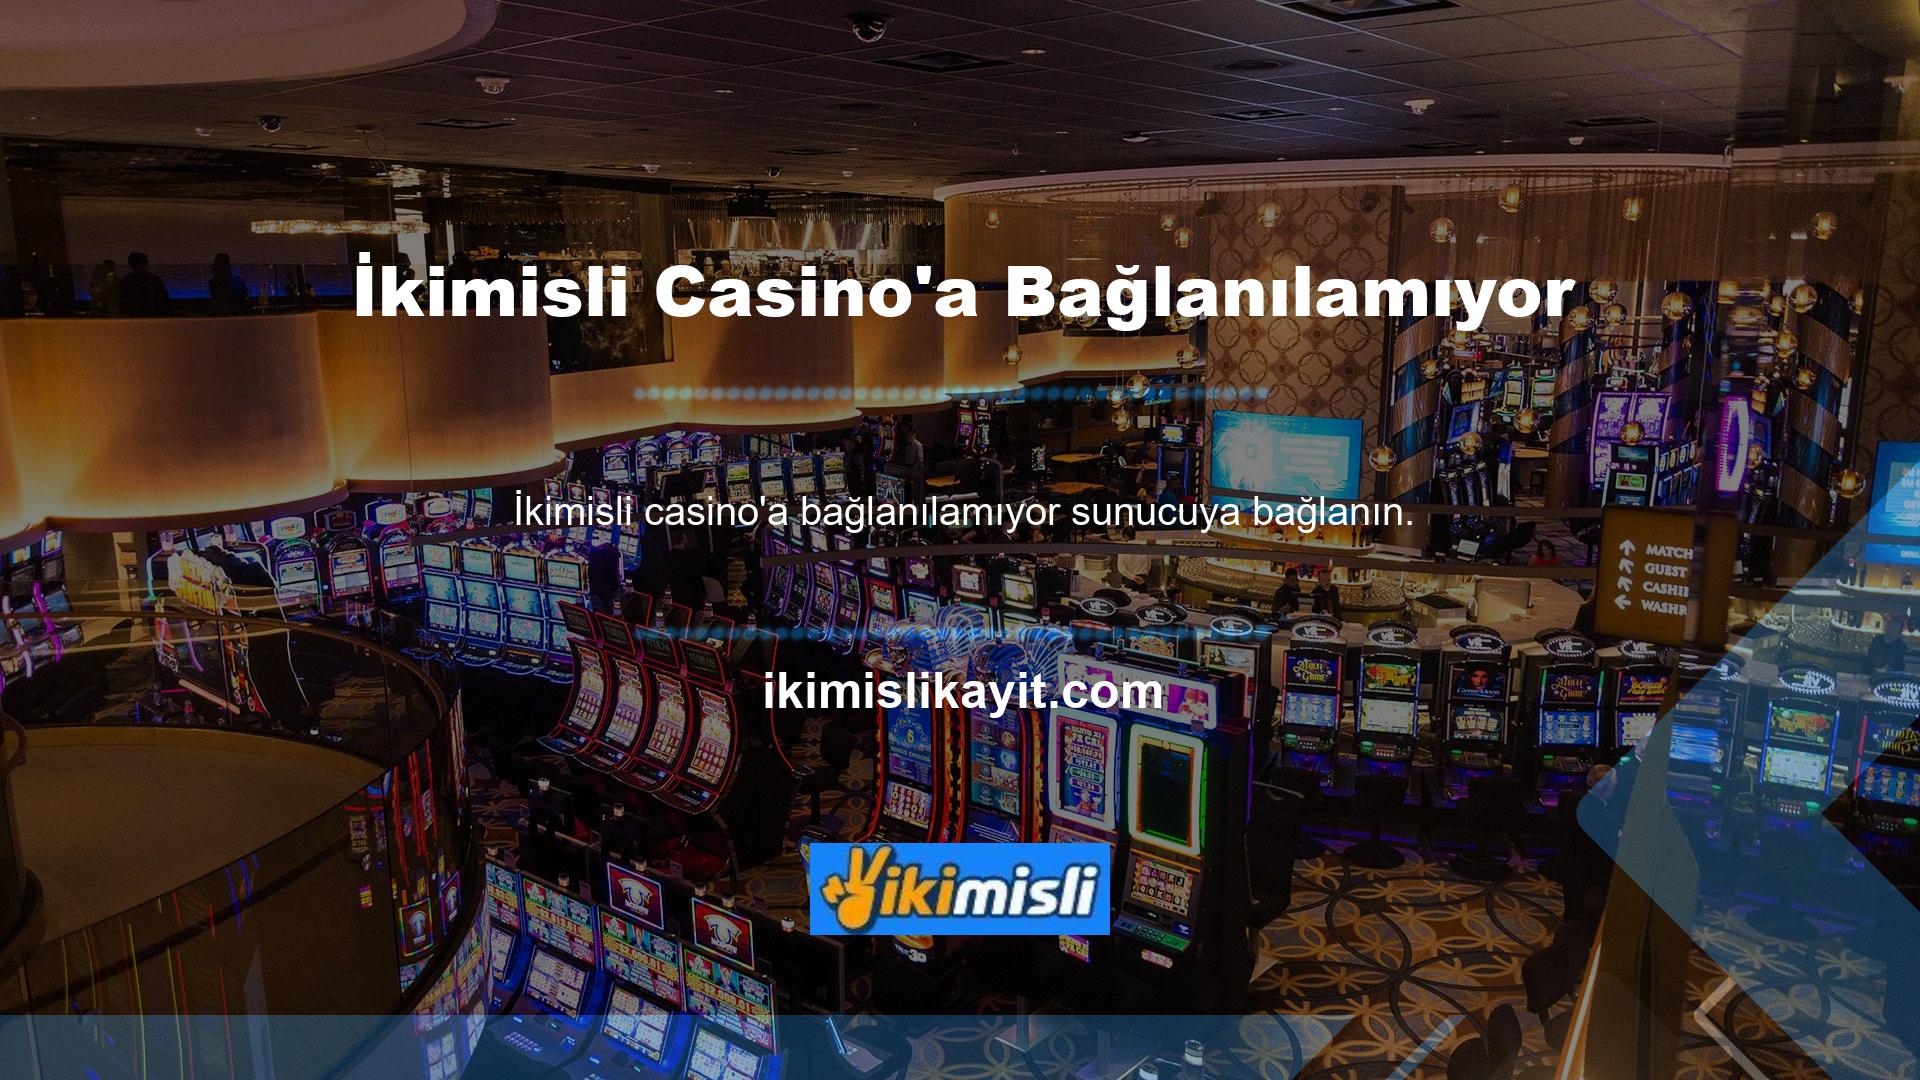 Oynamak için güvenilir bir yasa dışı casino sitesinde hesap oluşturabilirsiniz